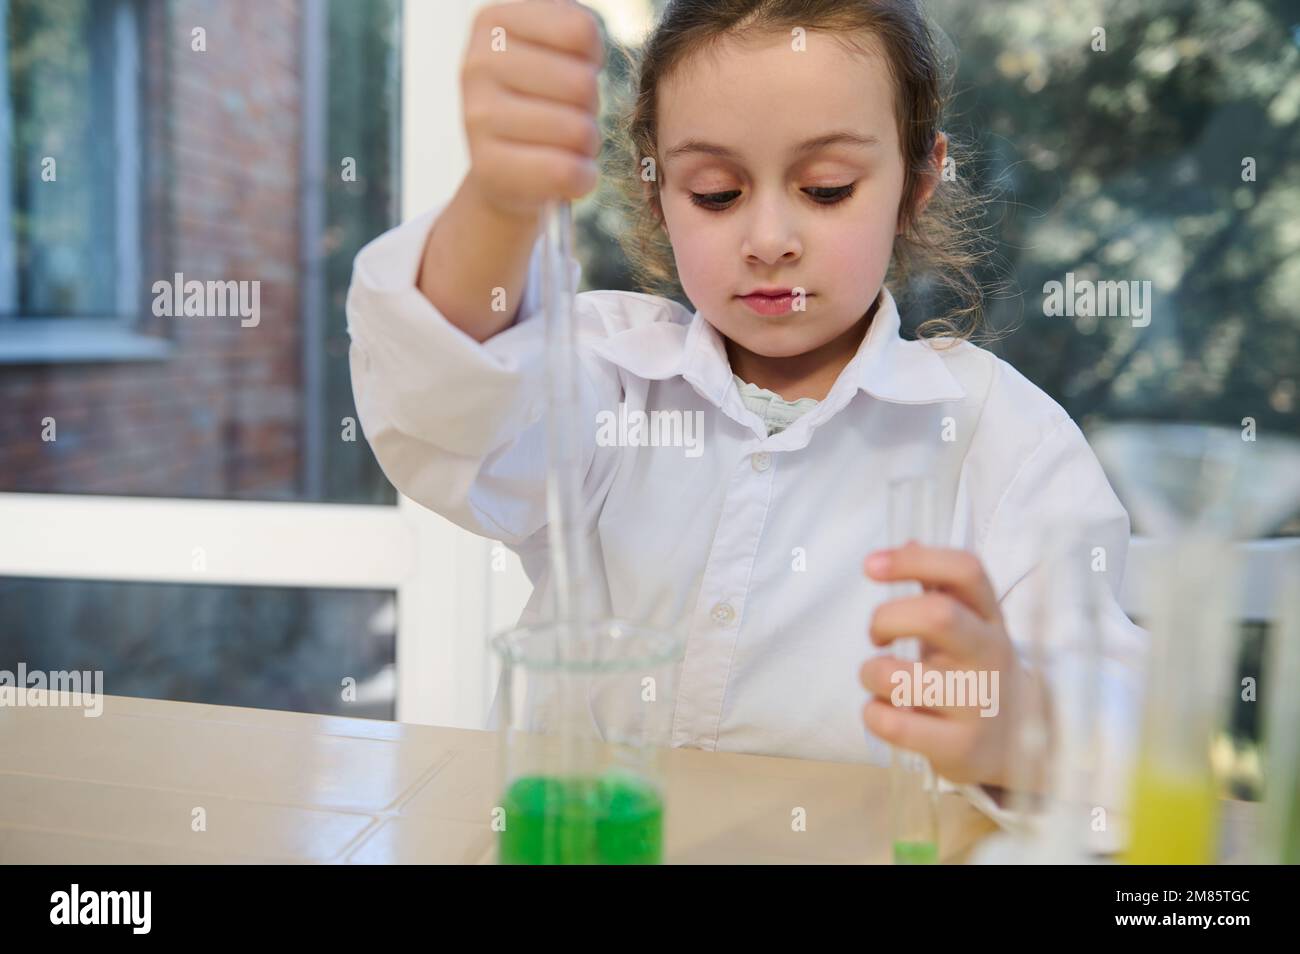 Petite fille d'école utilisant une pipette graduée et un tube à essai, conduit des expériences chimiques, dans le laboratoire de chimie scolaire Banque D'Images